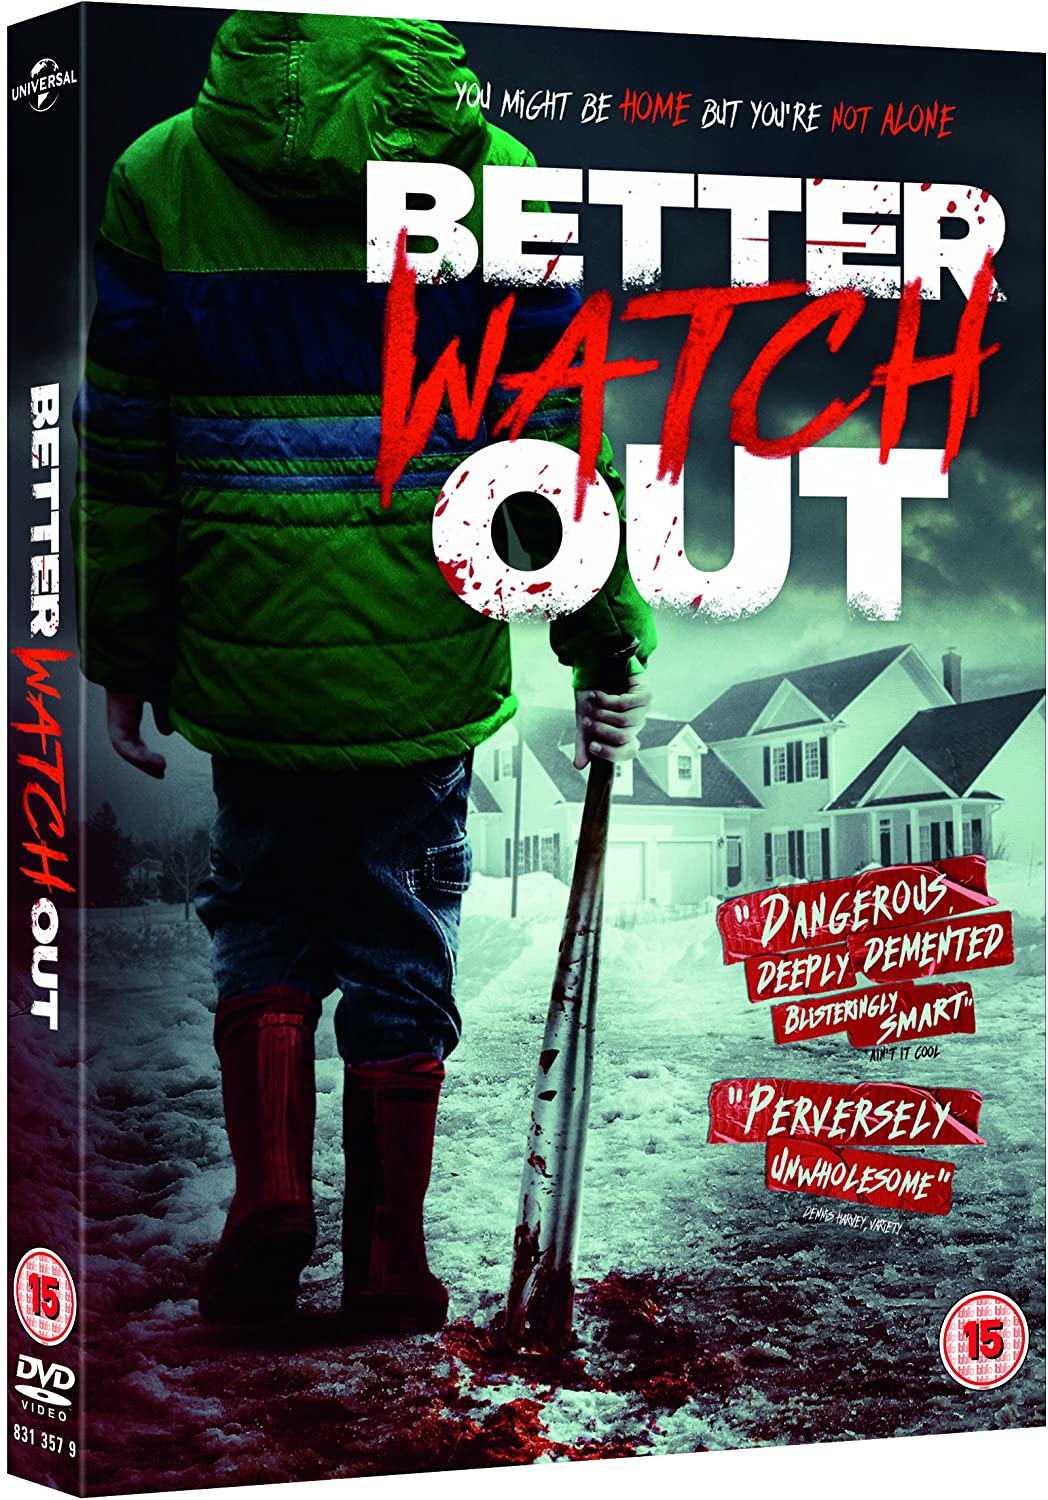 Better Watch Out (DVD)